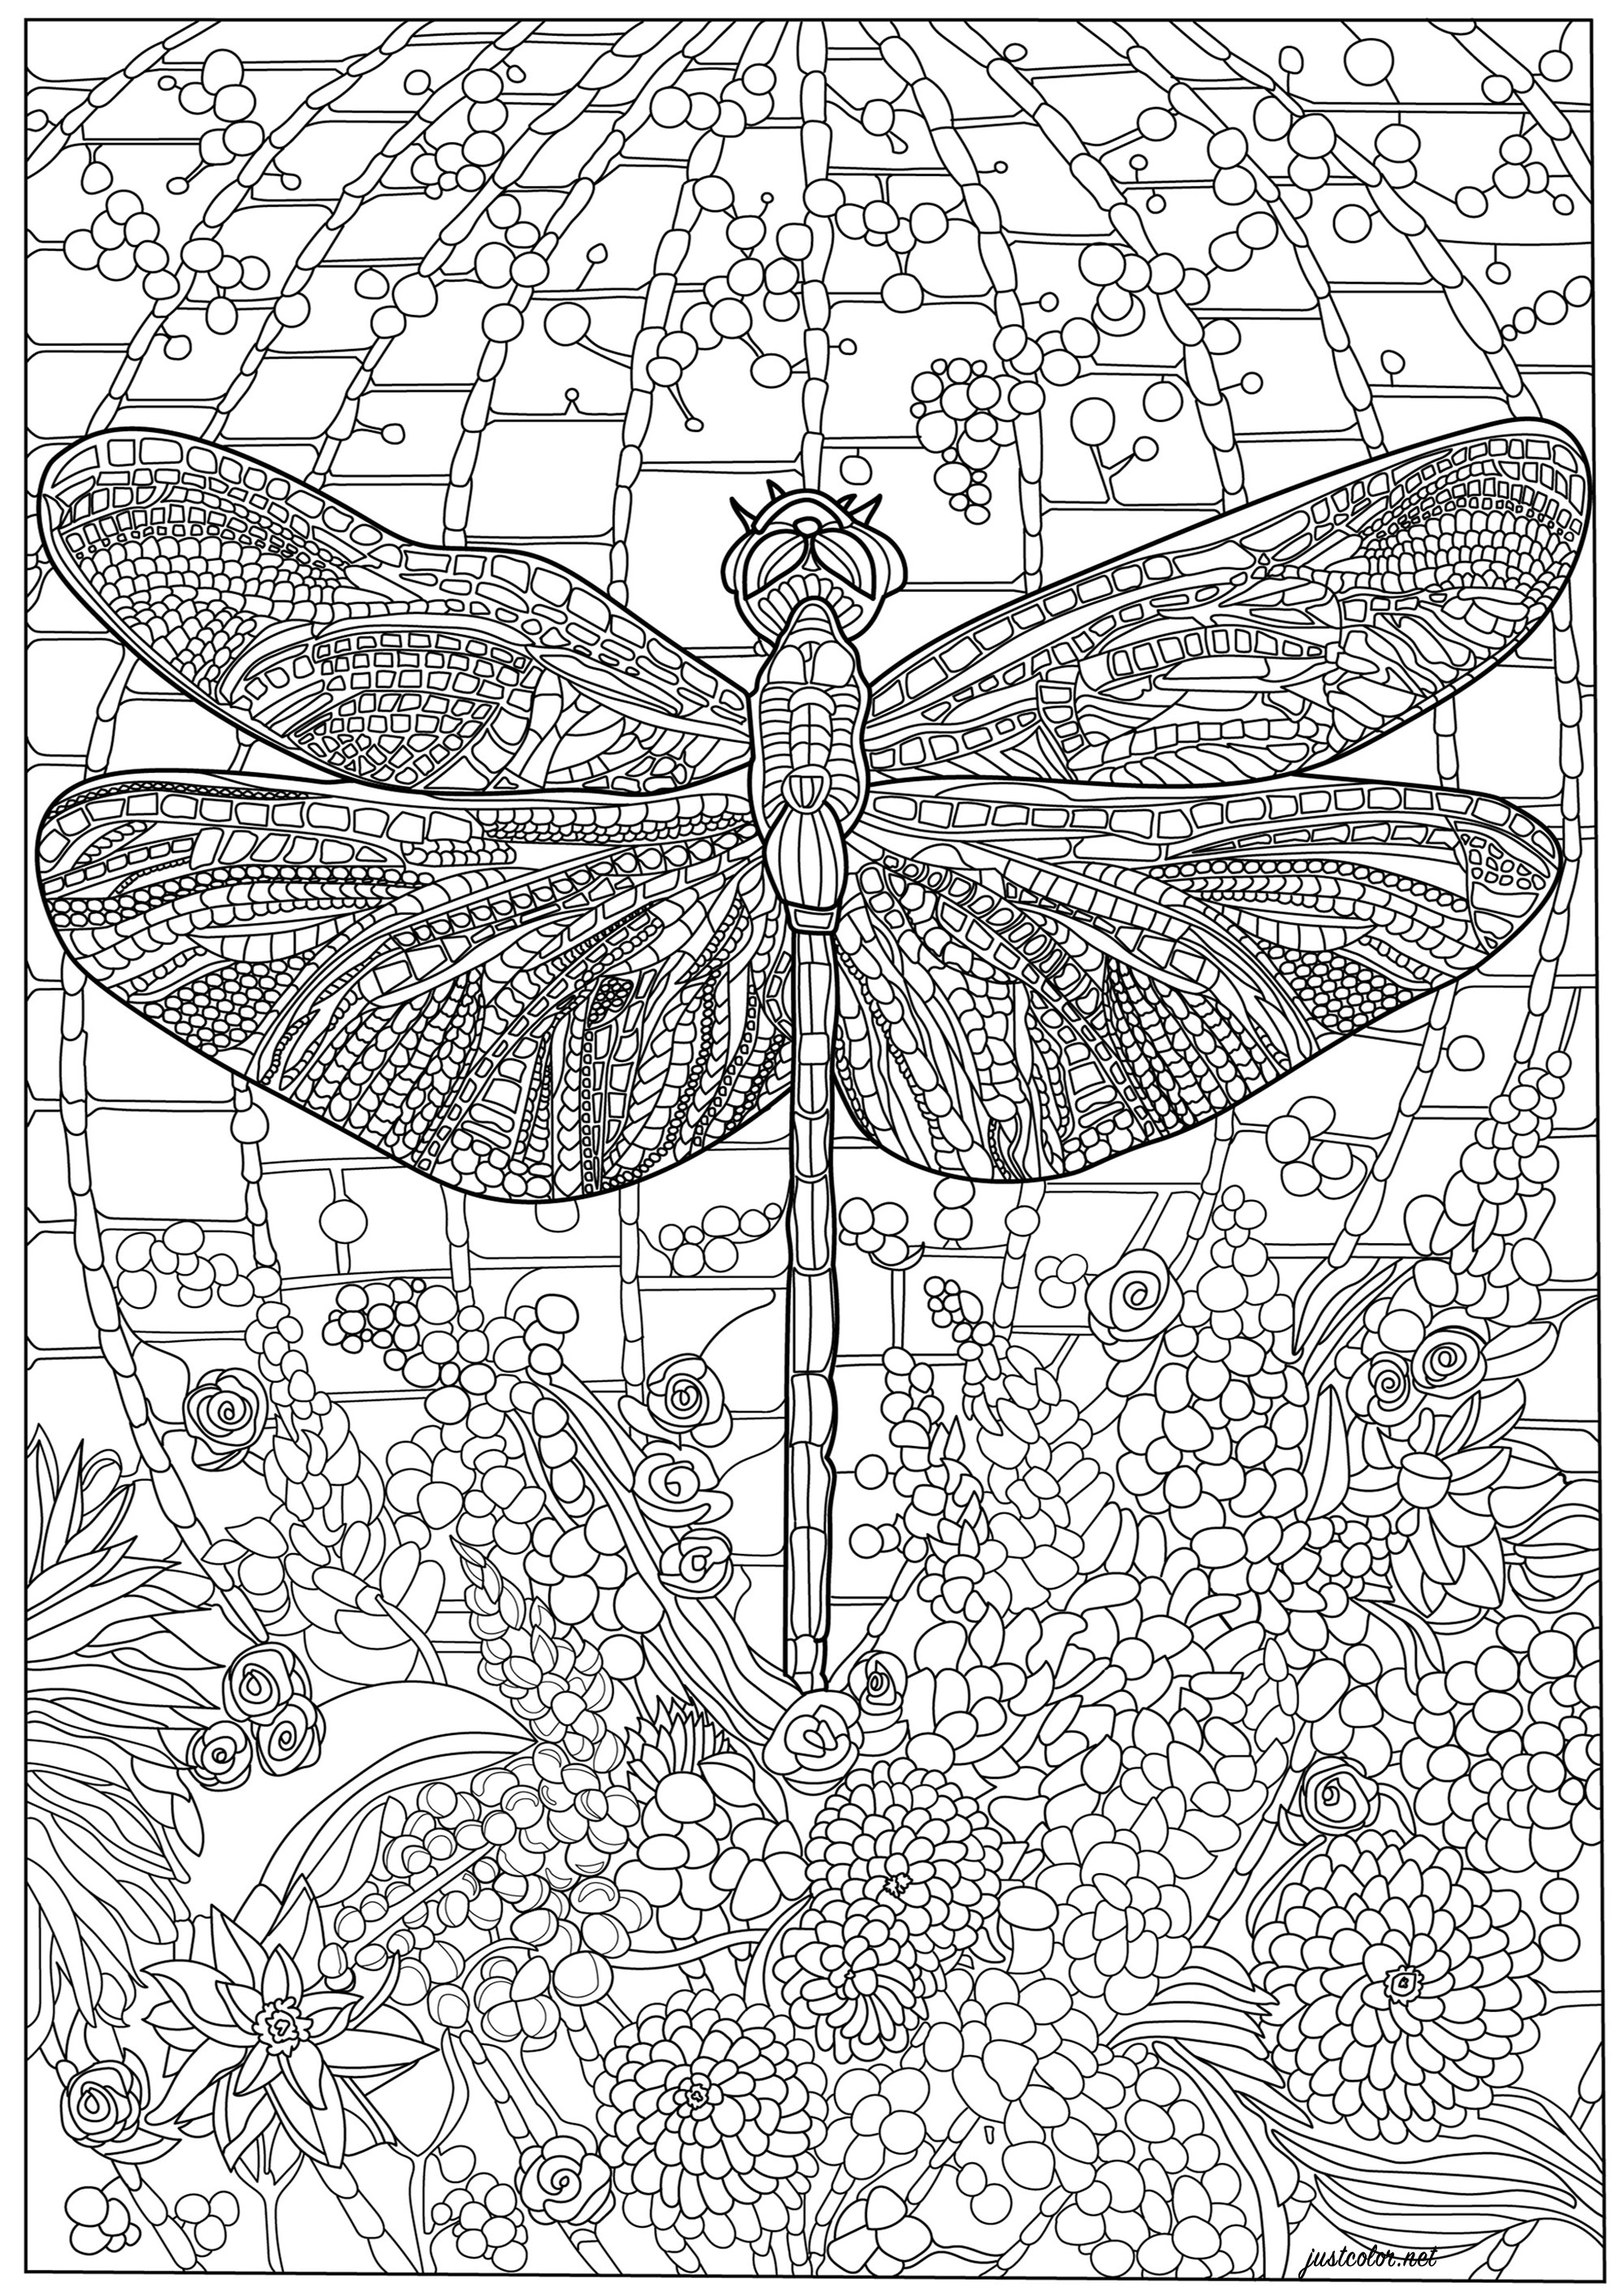 Libélula y muchos detalles intrincados. Un colorido repleto de detalles, tanto en el cuerpo de la libélula como en el fondo, Artista : Morgan